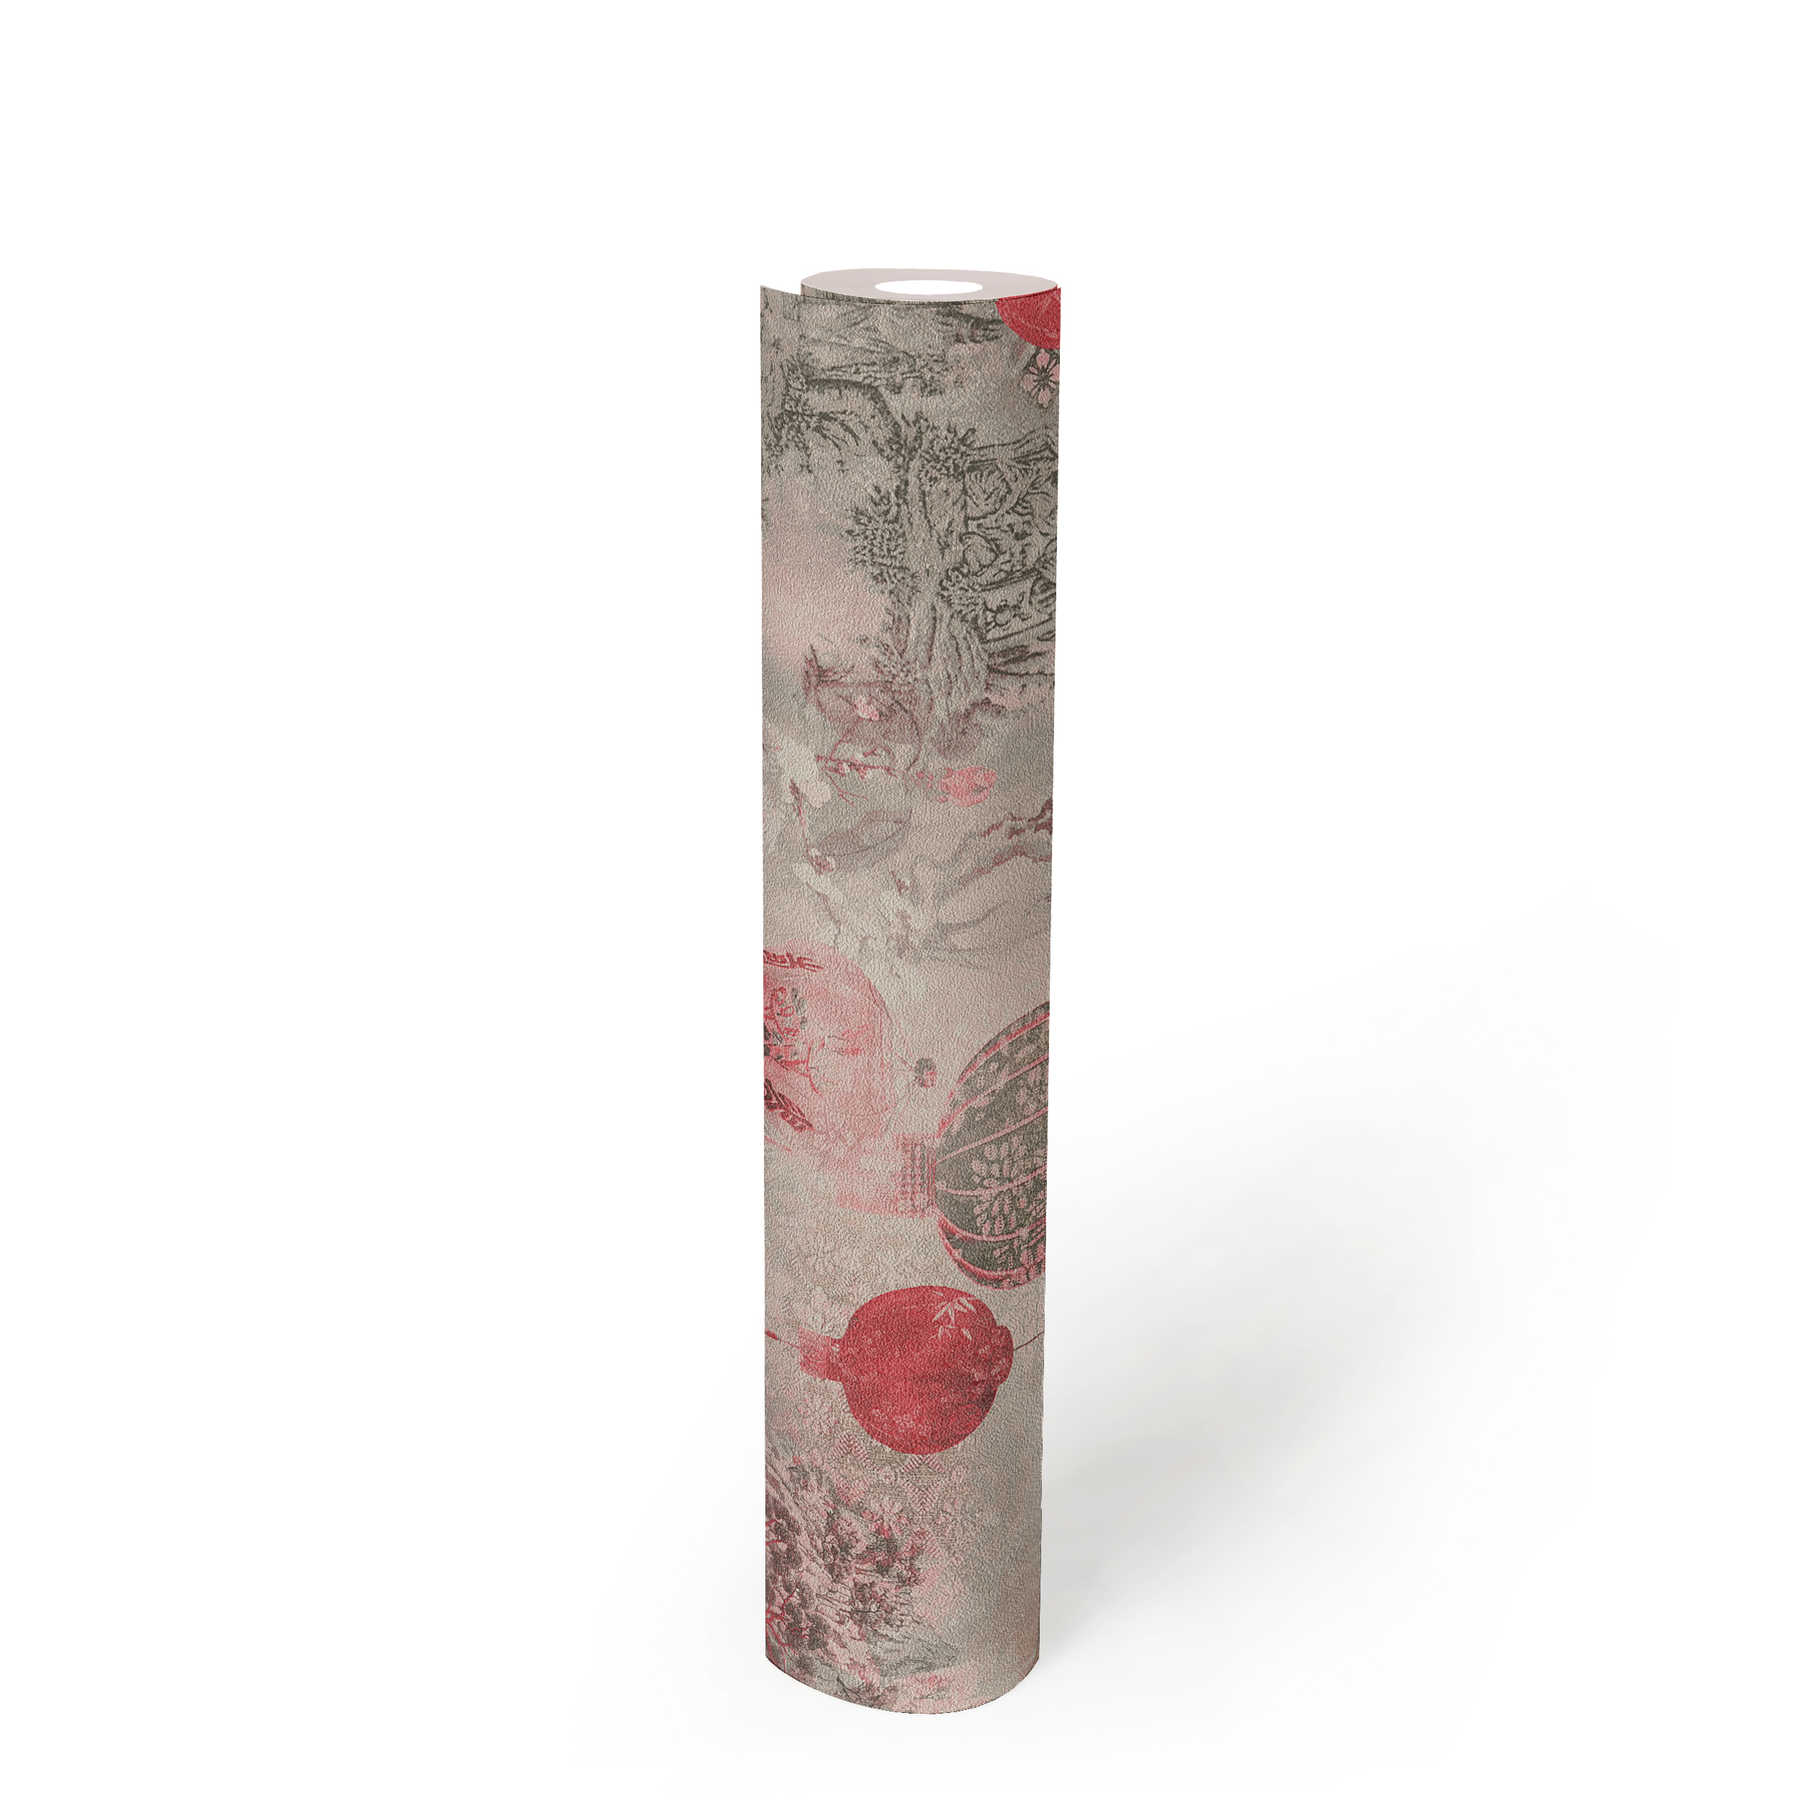             Vliesbehang met landschapsmotief en Aziatisch decor - grijs, rood, roze
        